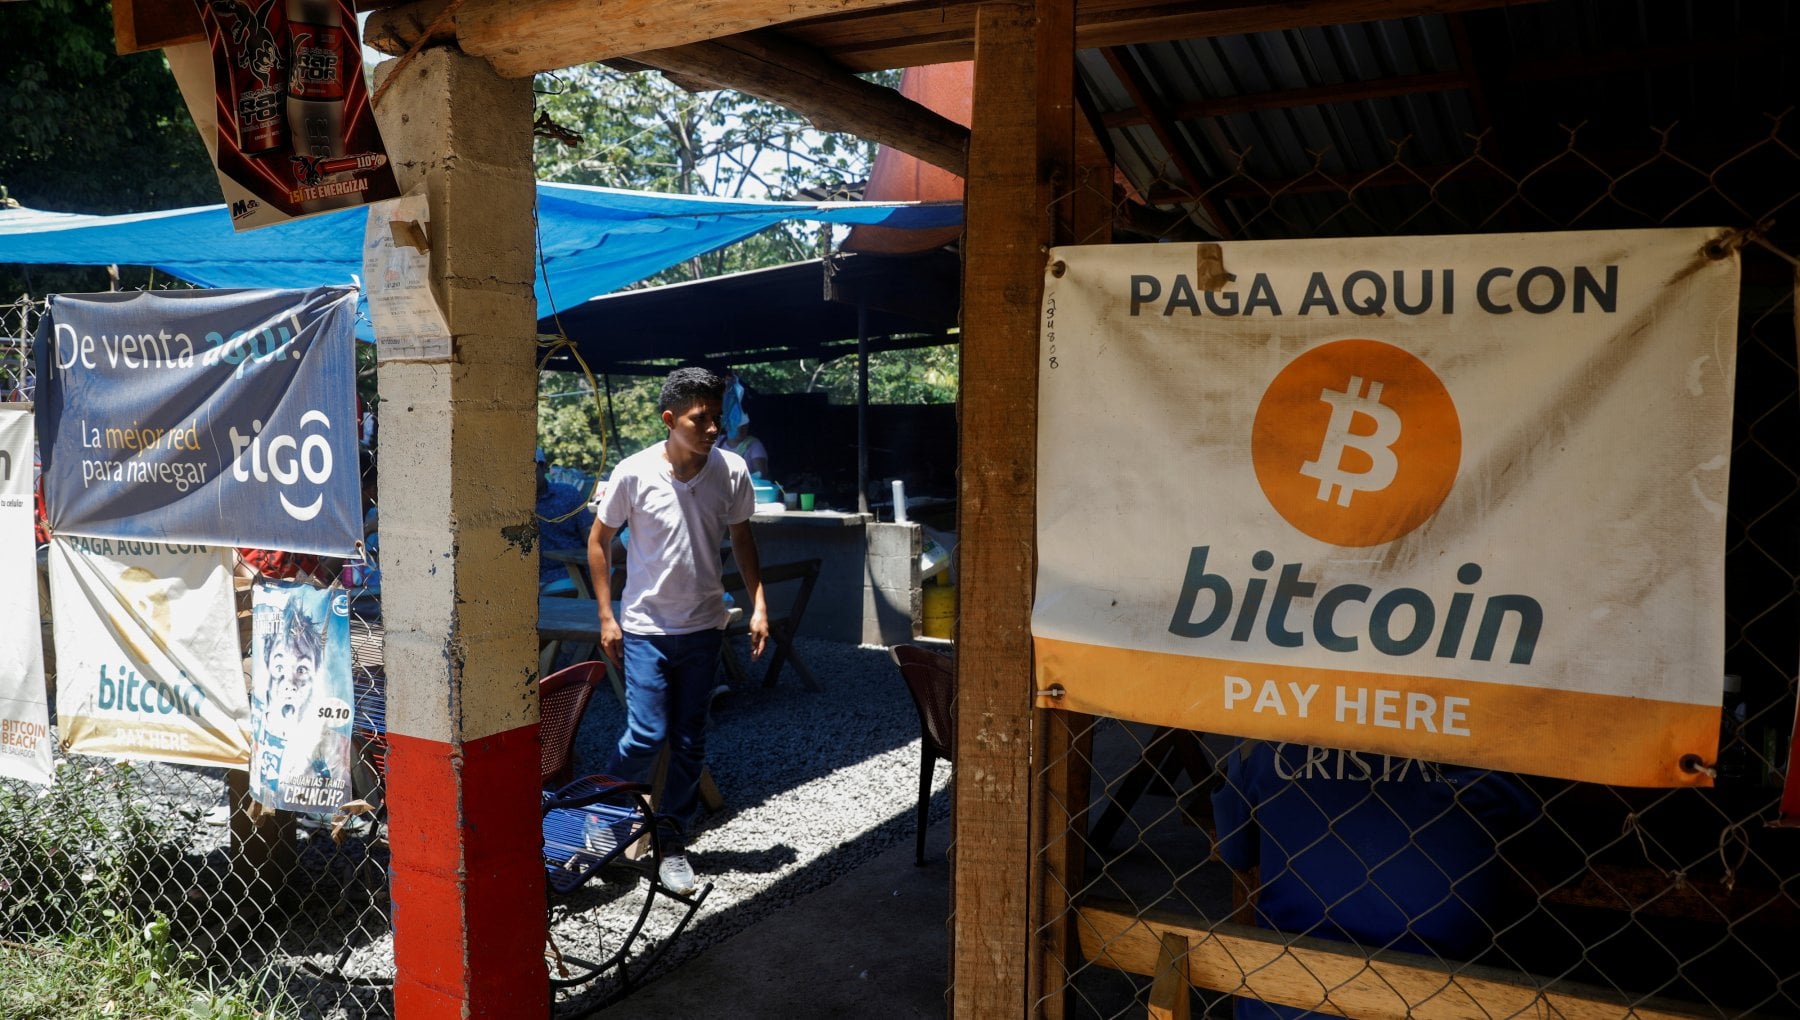 Lo scarso uso di bitcoin in El Salvador non frena l'investimento da parte di aziende straniere - 140310300 b6303a2e 27fe 46c5 b22d 03681de67973